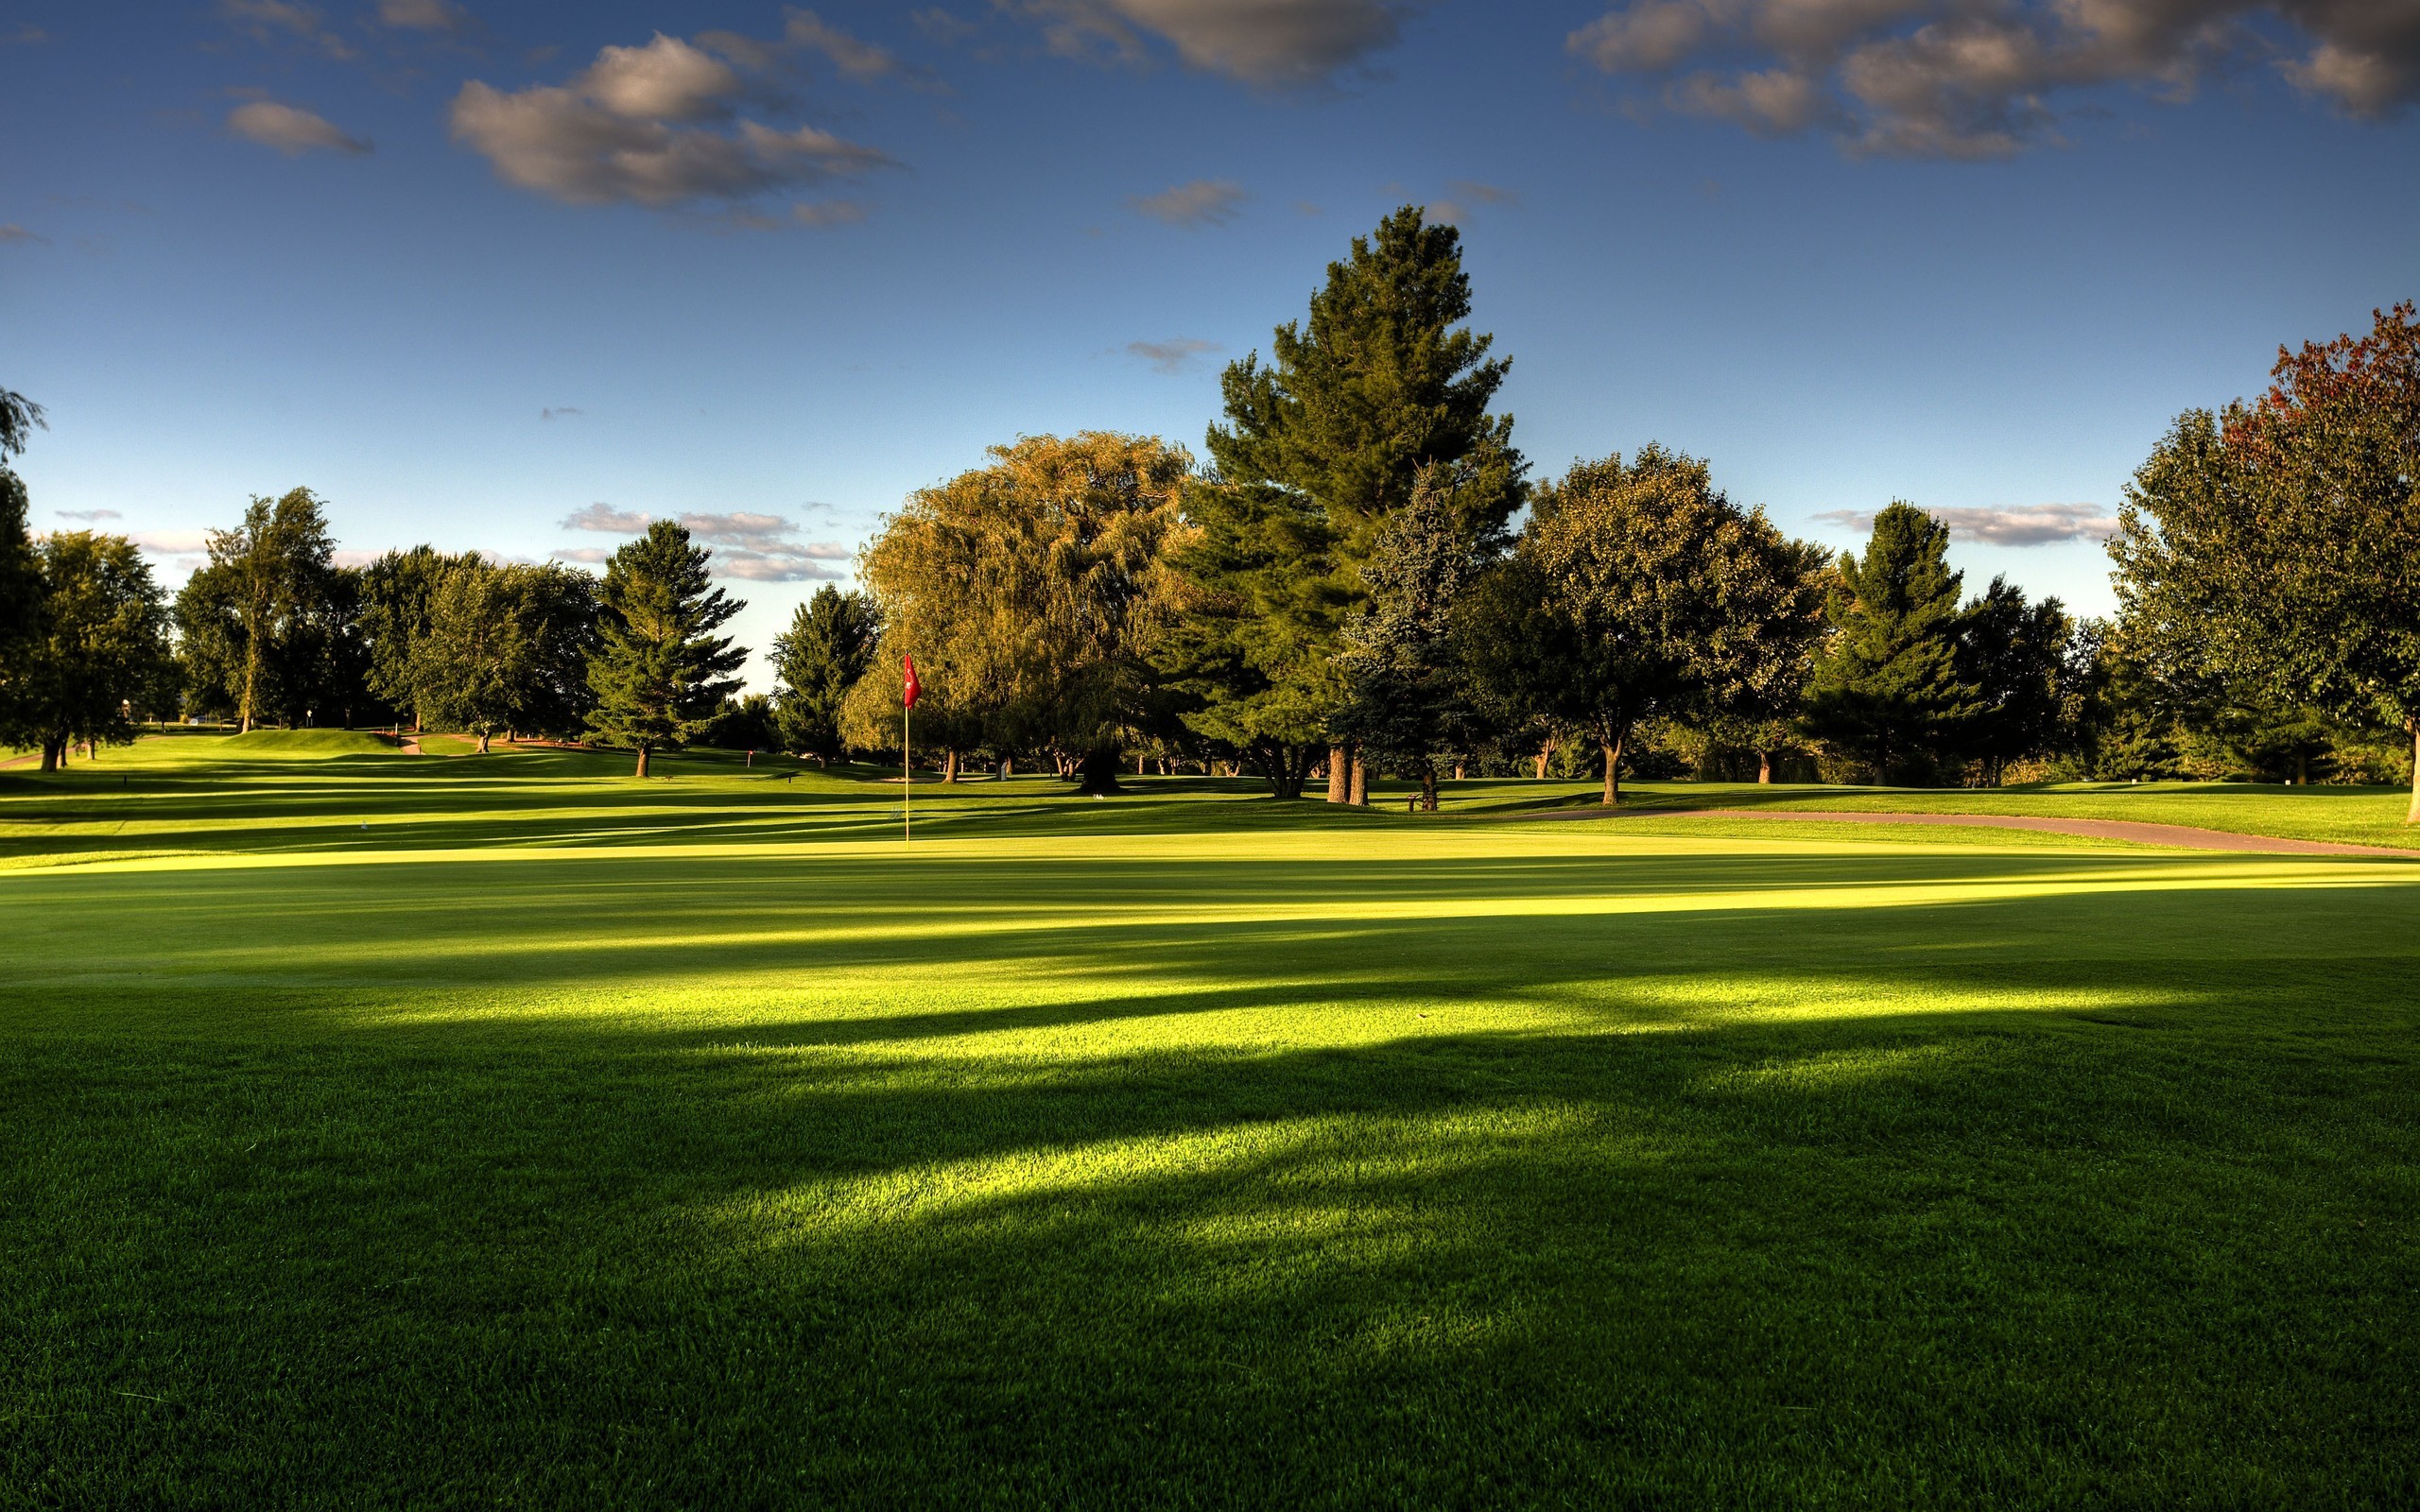 General 2560x1600 park green grass dappled sunlight Turkey golf course calm trees